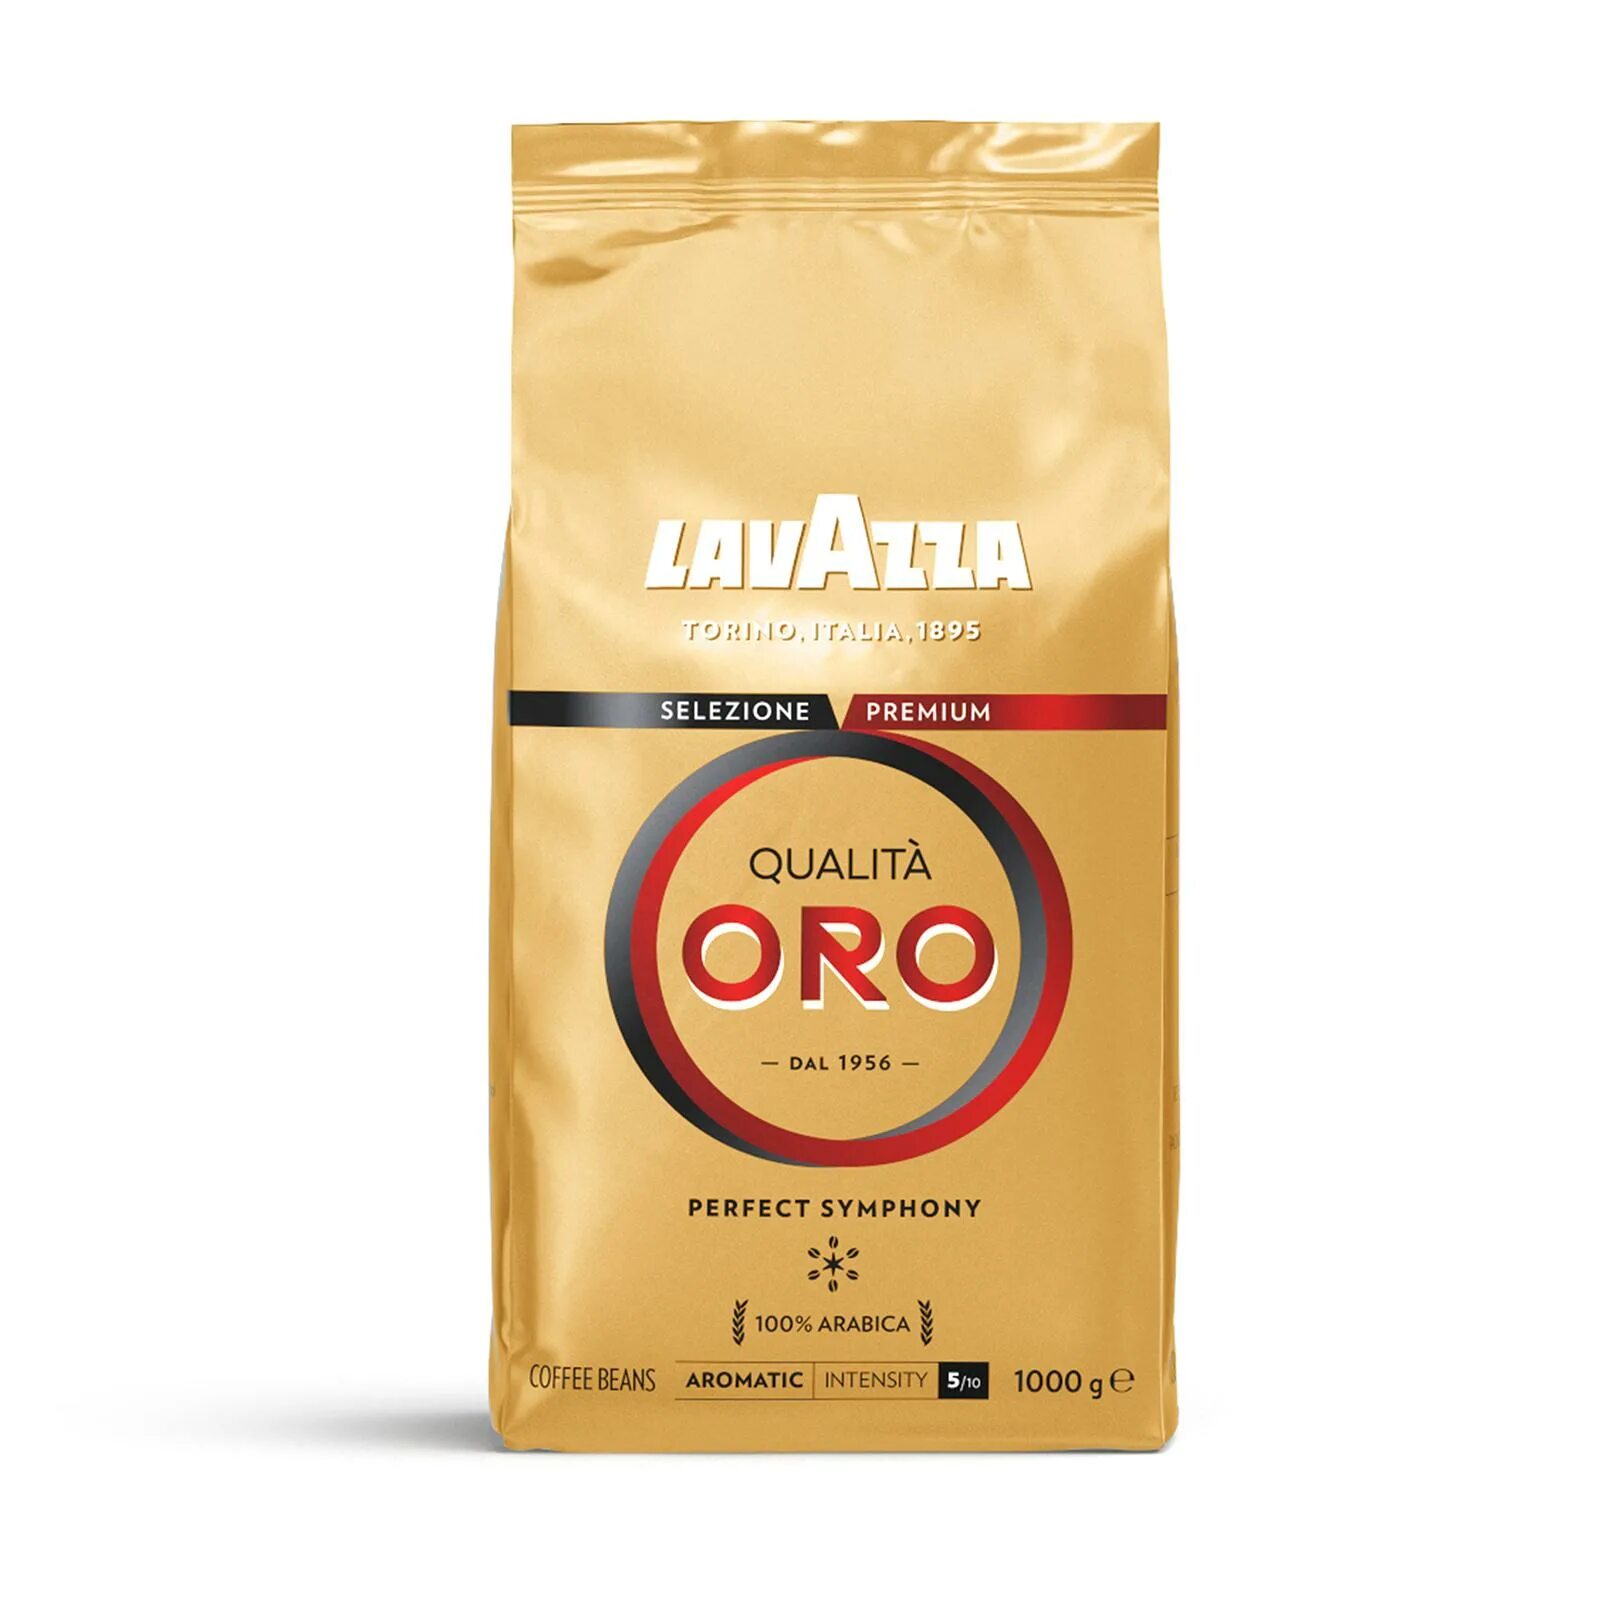 Lavazza qualita oro 1 кг зерно. Лавацца Оро 1 кг зерновой. Lavazza Oro 1 кг как должны выглядеть зерна. Лавацца Оро описание.